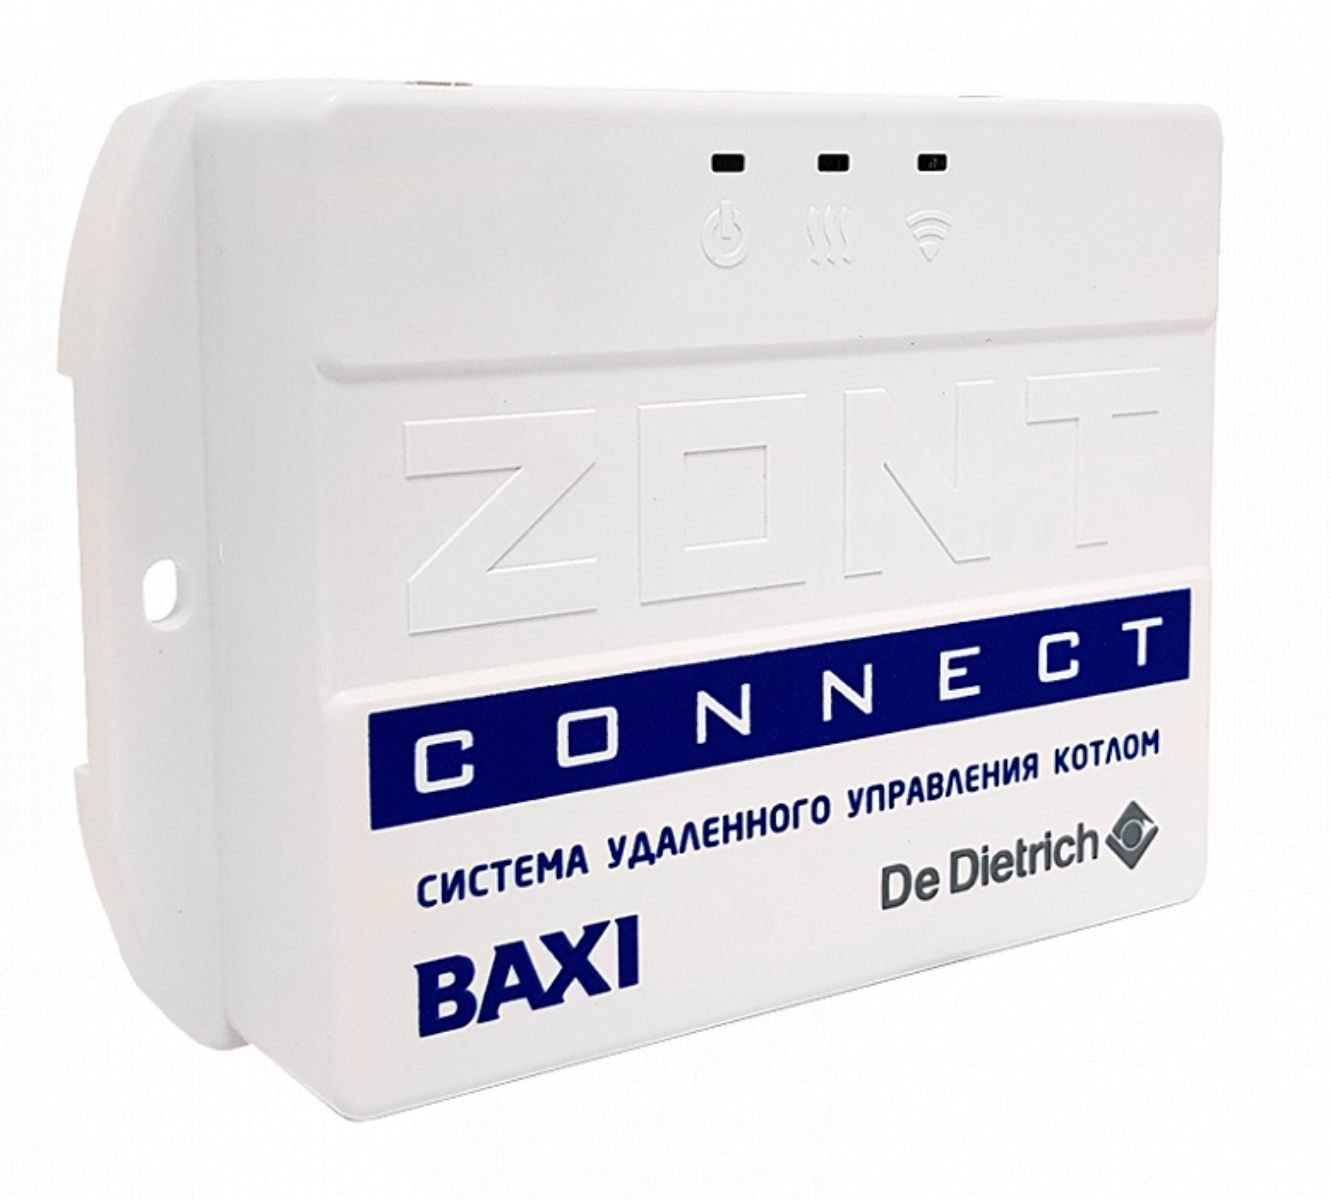 Блок zont. Zont connect Baxi. Система удаленного управления котлом Baxi Zont connect. Baxi Zont connect ml 00003824. GSM модуль для котлов Baxi.